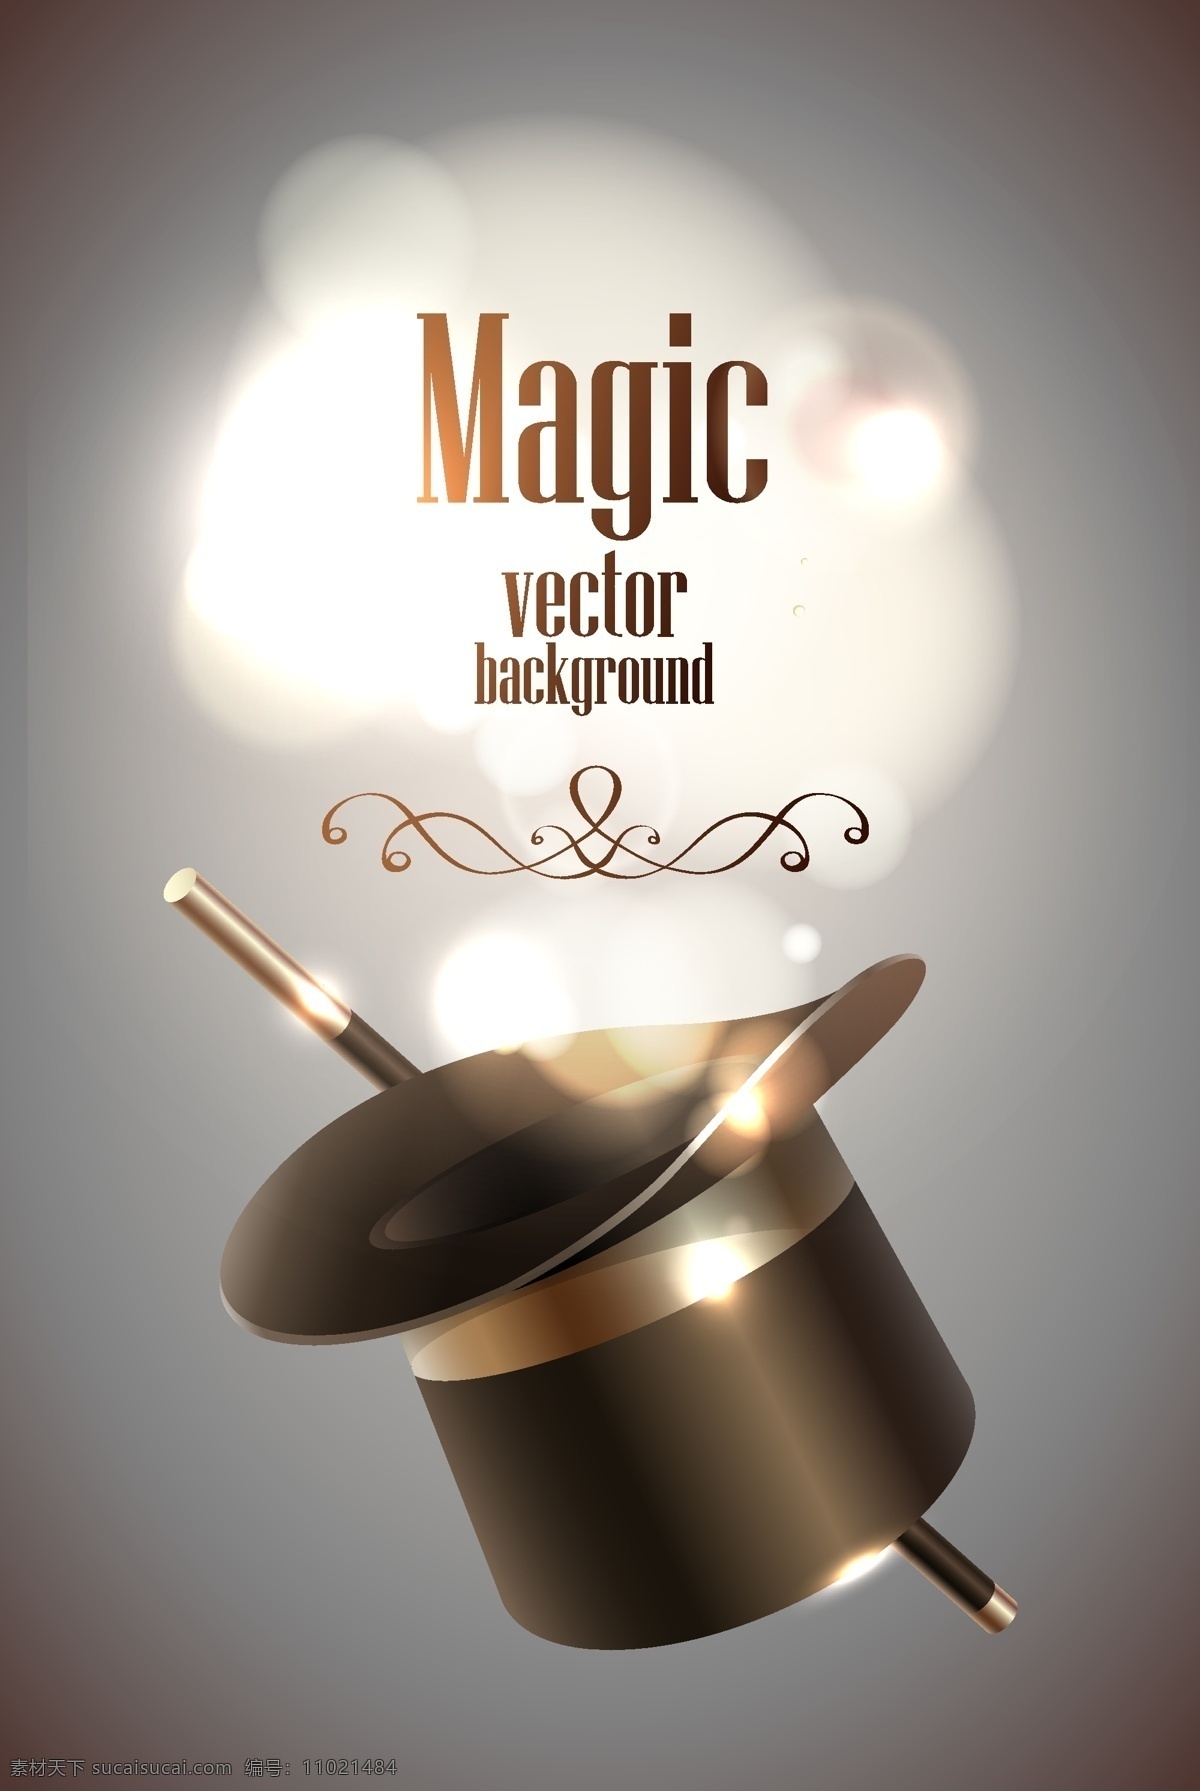 魔术 帽子 棒 魔术背景 魔术师 魔术表演 魔术棒 魔术道具 魔术海报 生活百科 矢量素材 灰色